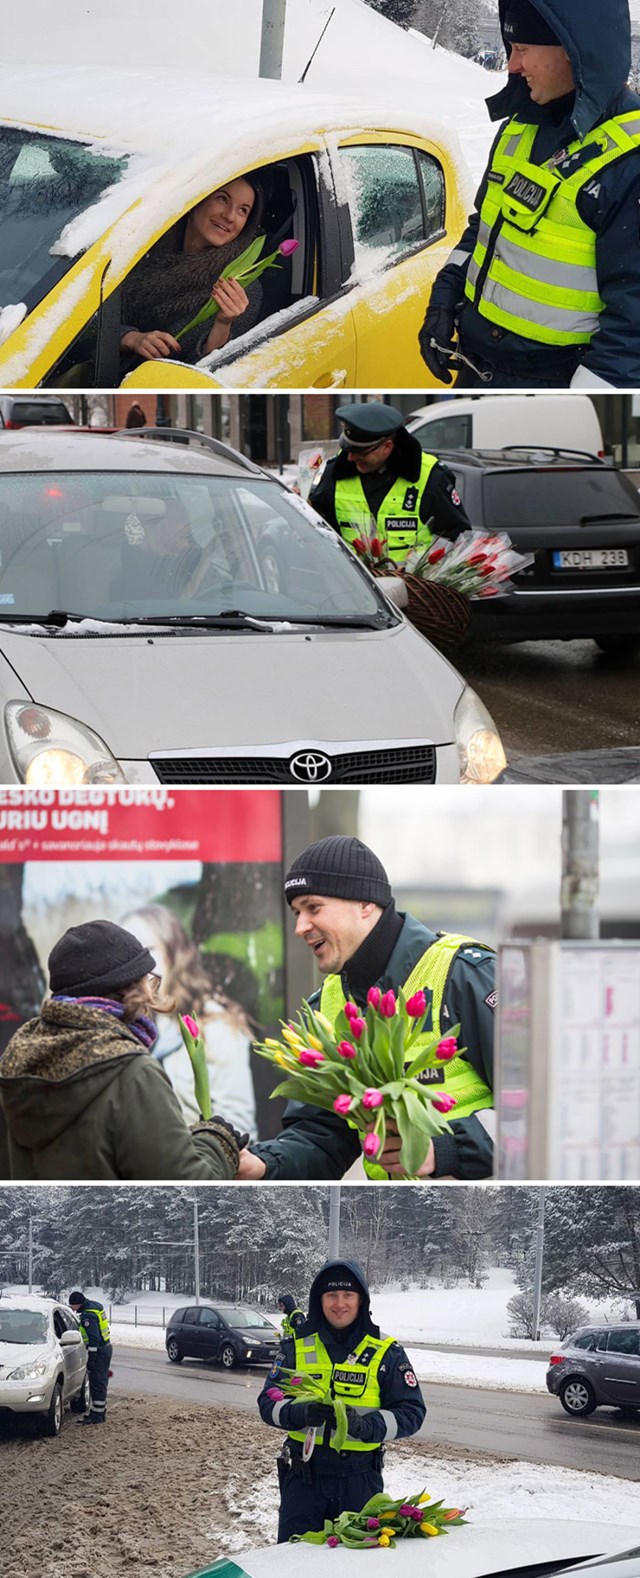 Policija u Litvi ima tradiciju da zaustavlja svaku vozačicu na Međunarodni dan žena i daje joj cvijeće